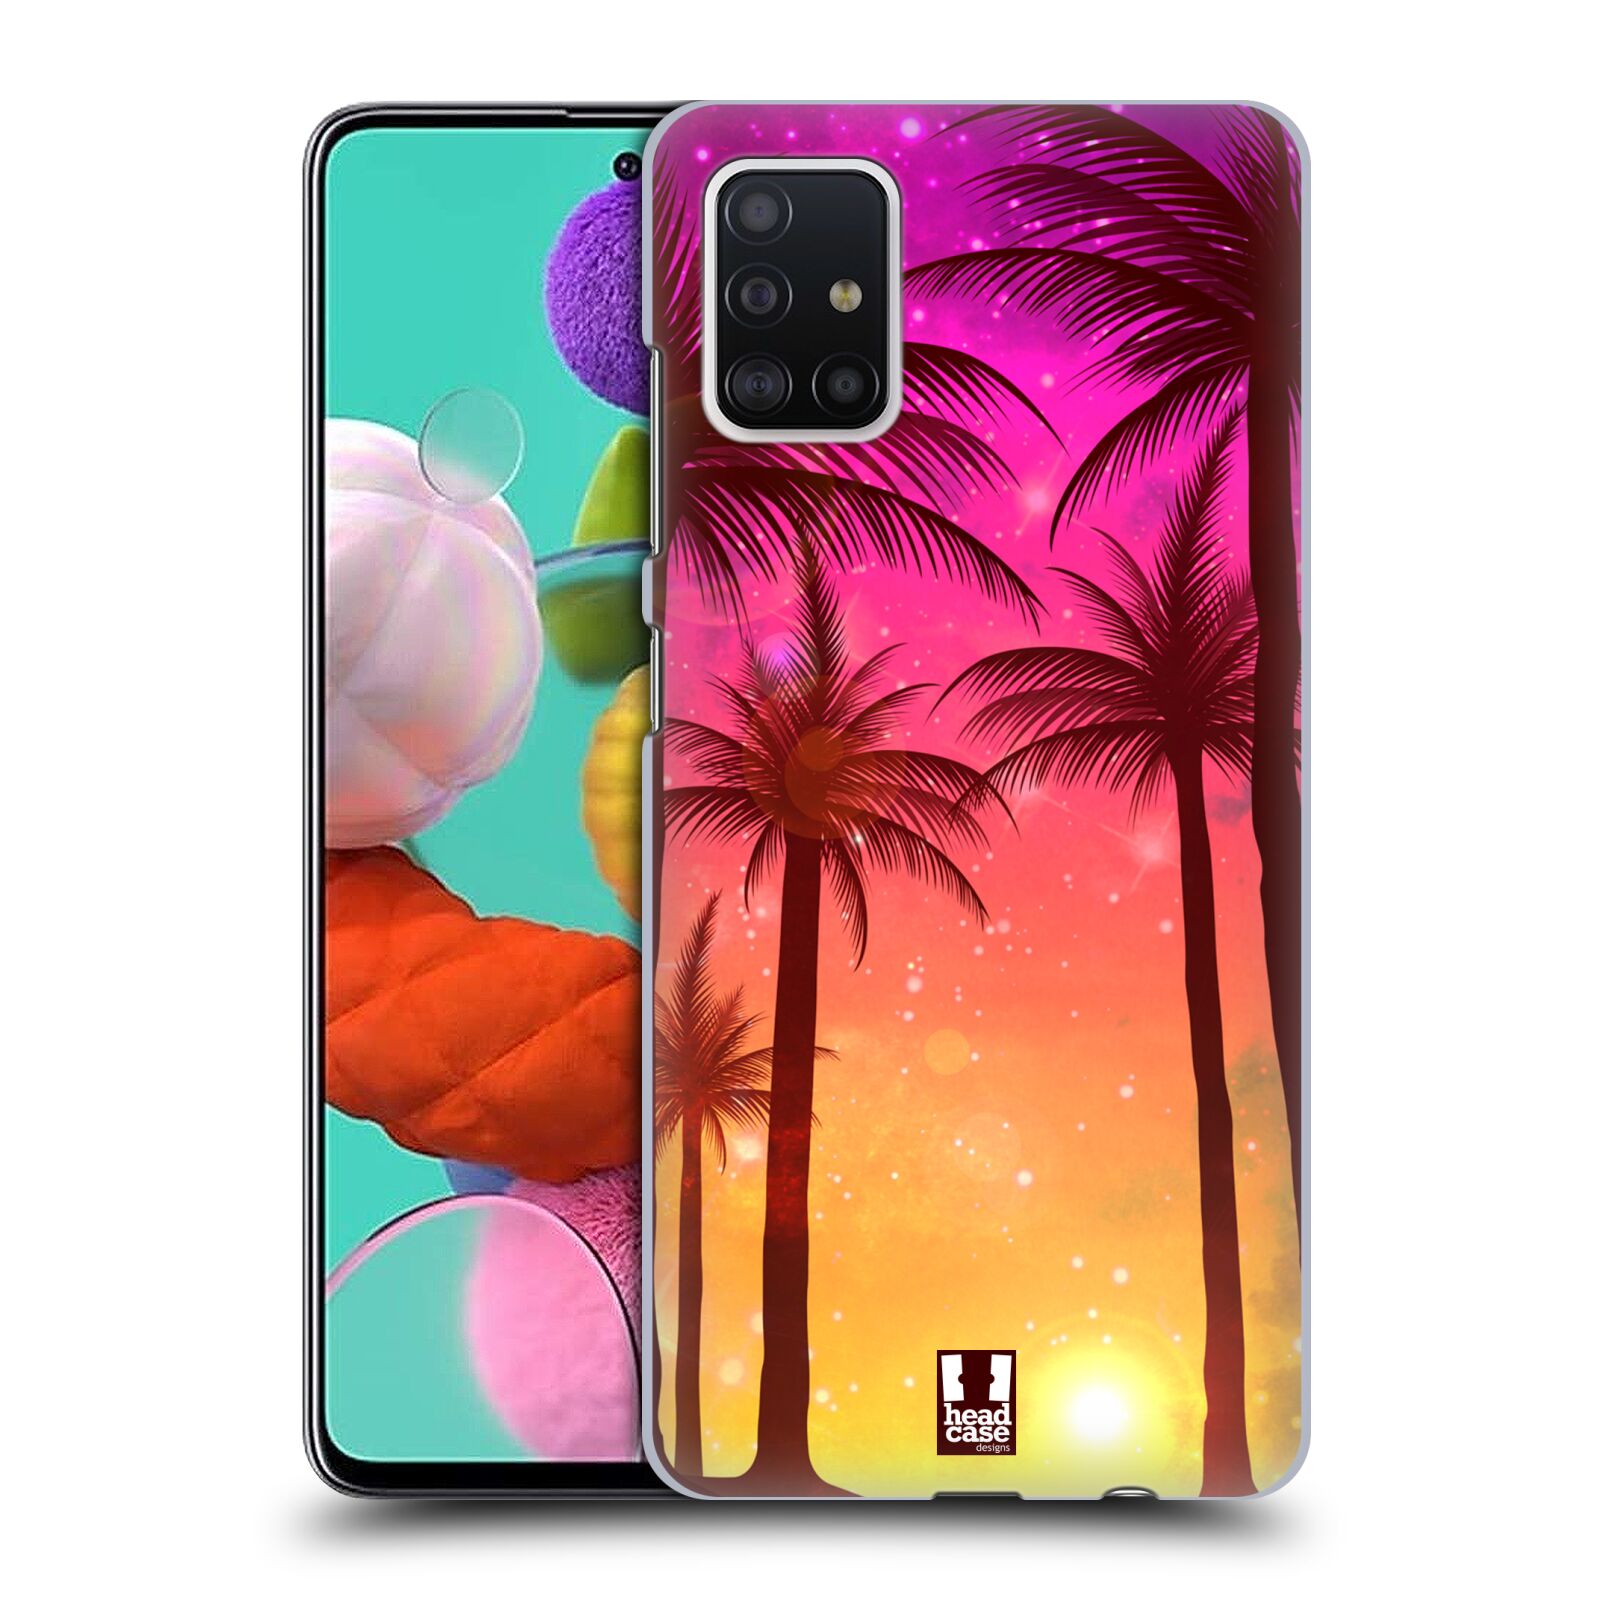 Pouzdro na mobil Samsung Galaxy A51 - HEAD CASE - vzor Kreslený motiv silueta moře a palmy RŮŽOVÁ